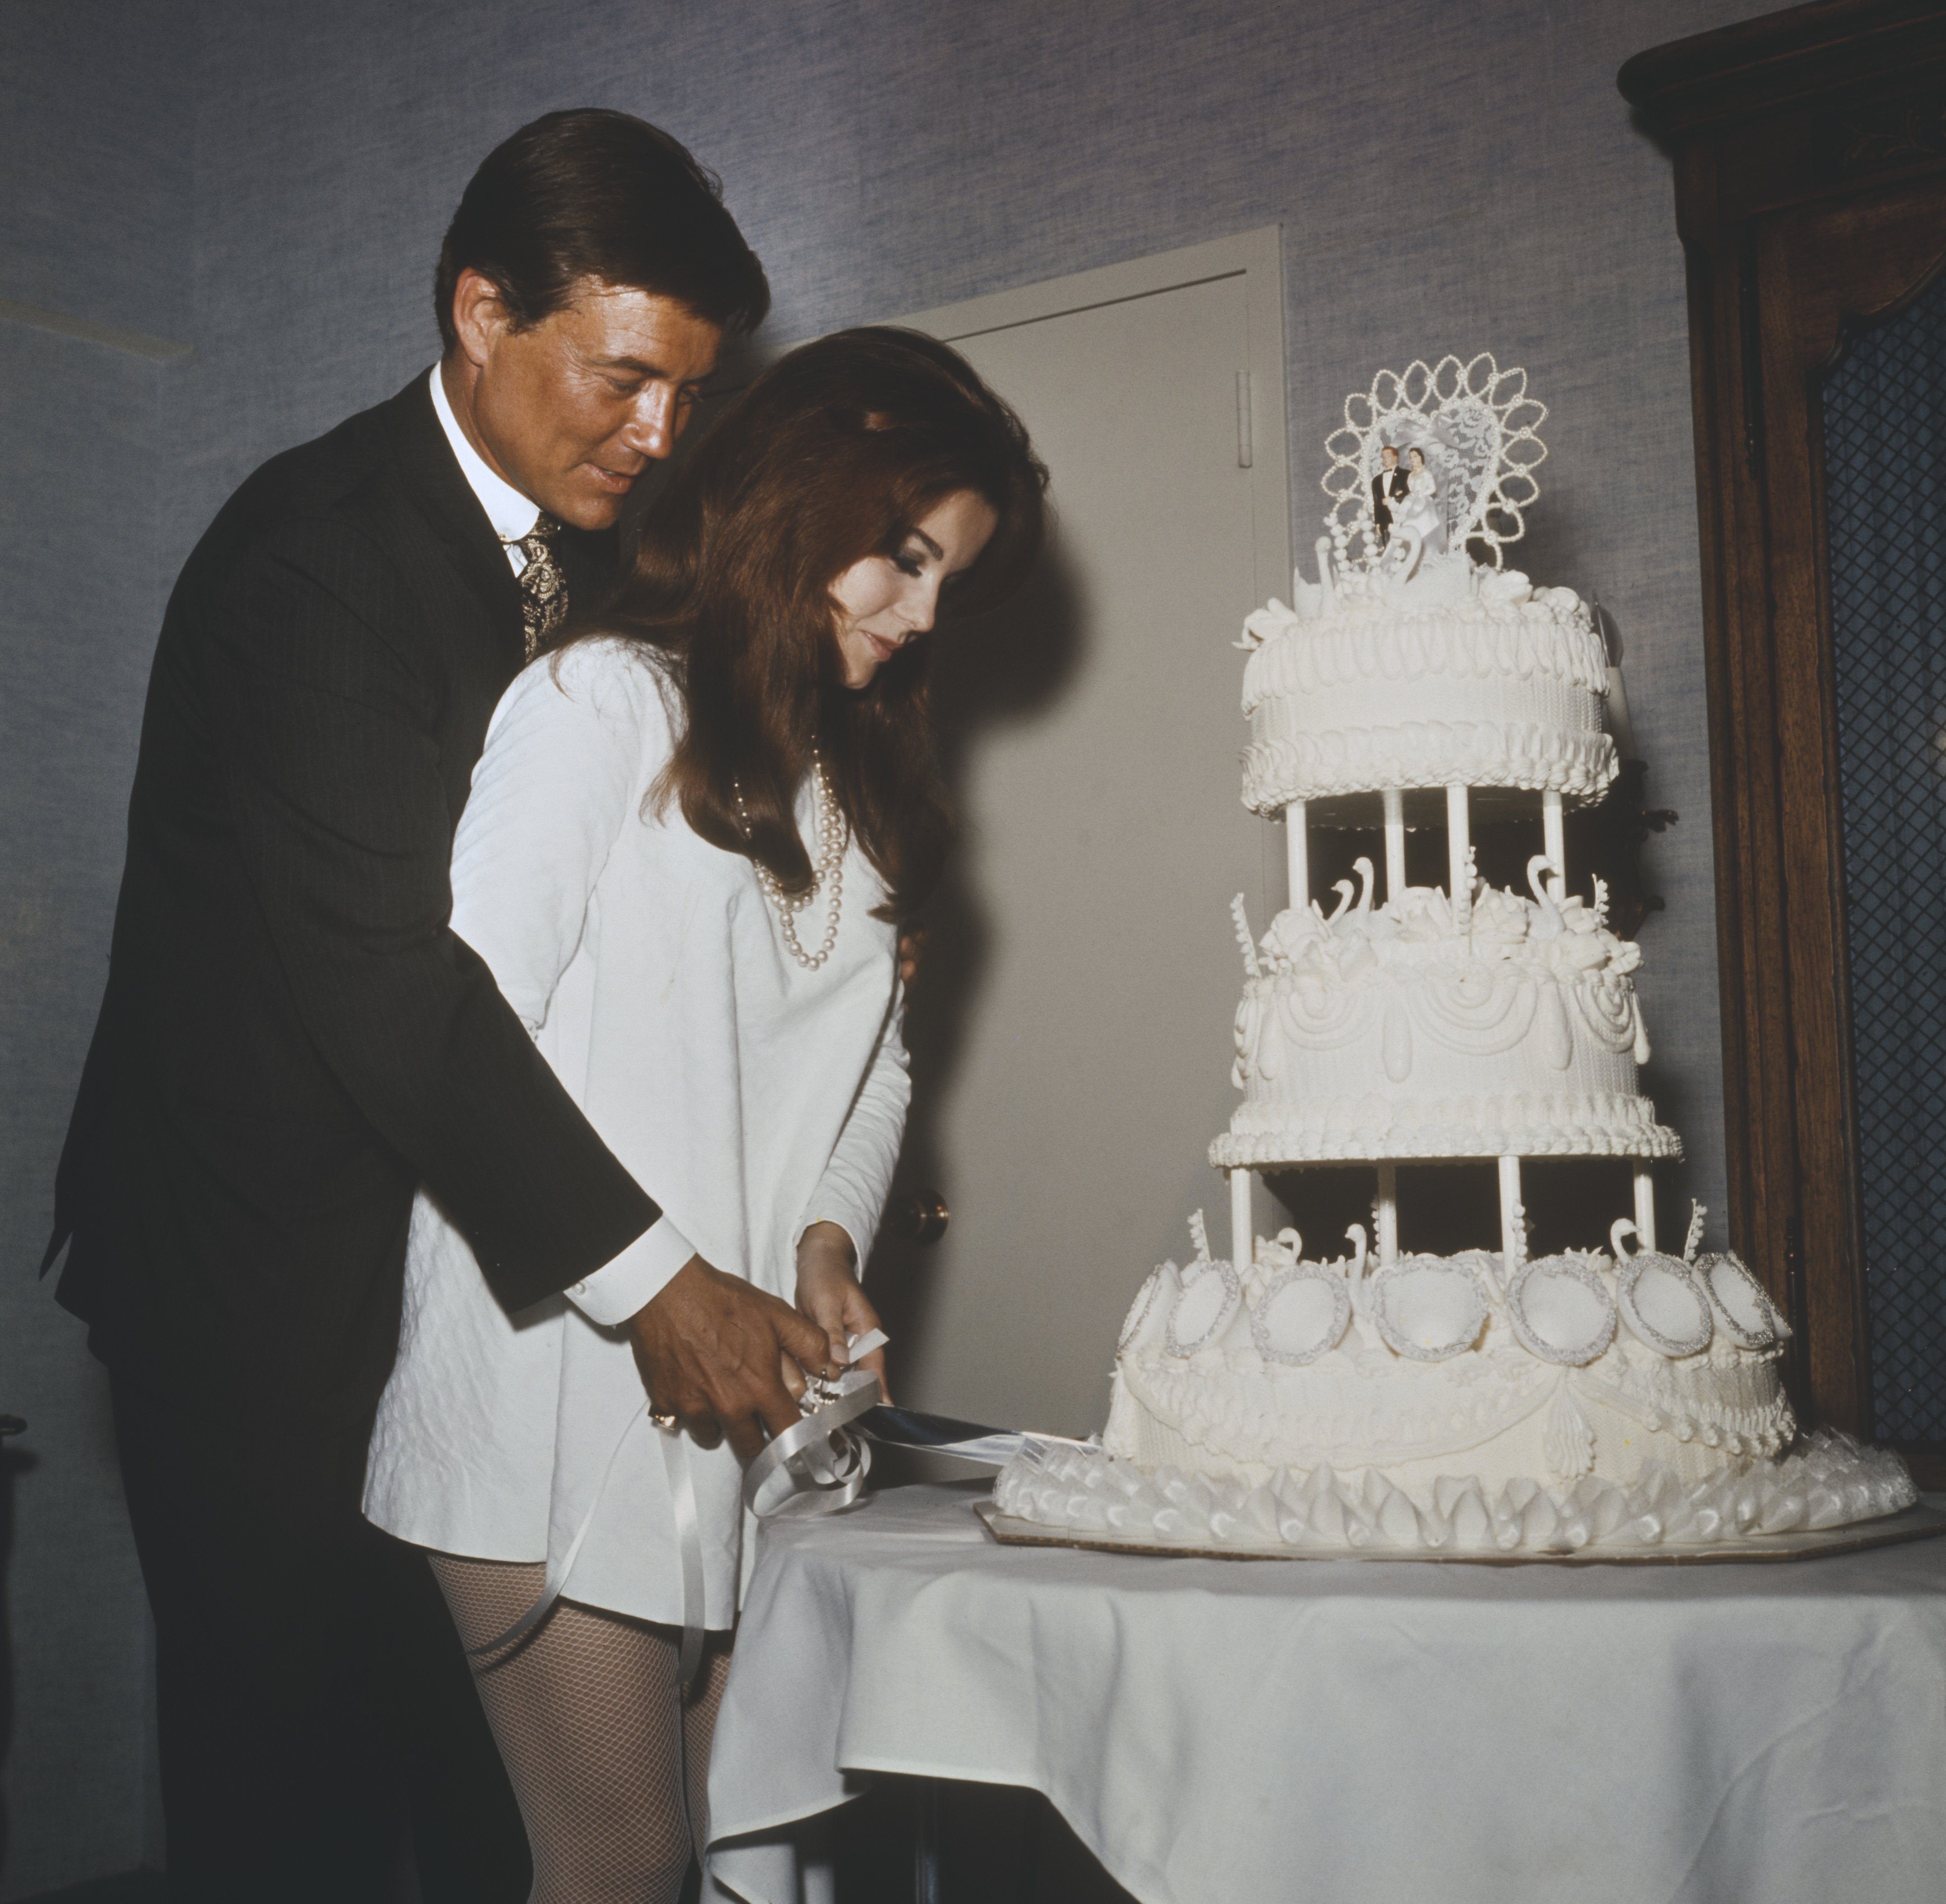 Die Frischvermählten Roger Smith und Ann-Margret schneiden nach ihrer Hochzeit im Riviera Hotel am 8. Mai 1967 in Las Vegas ihre Hochzeitstorte an. | Quelle: Getty Images